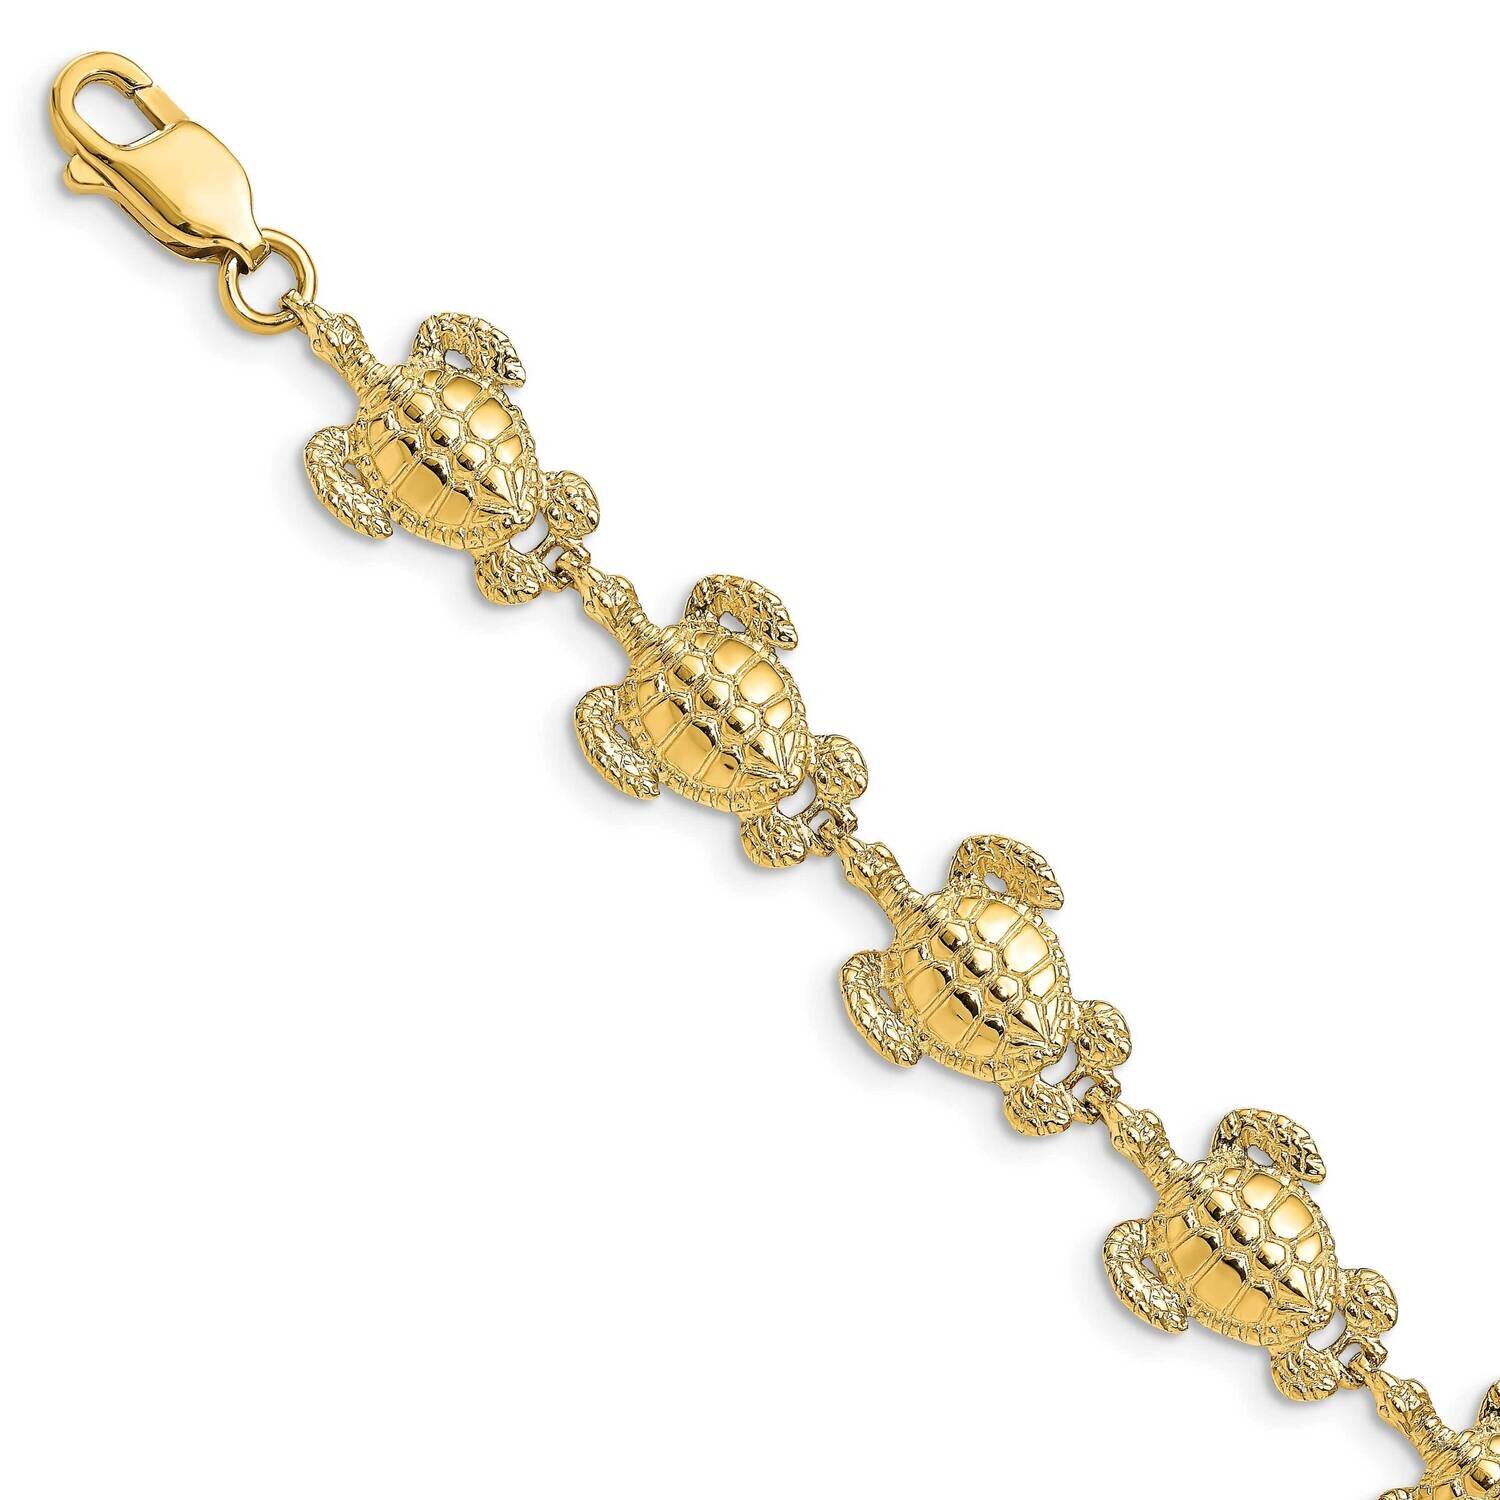 Sea Turtle Bracelet 14k Gold Polished & Textured FB1816-7.25